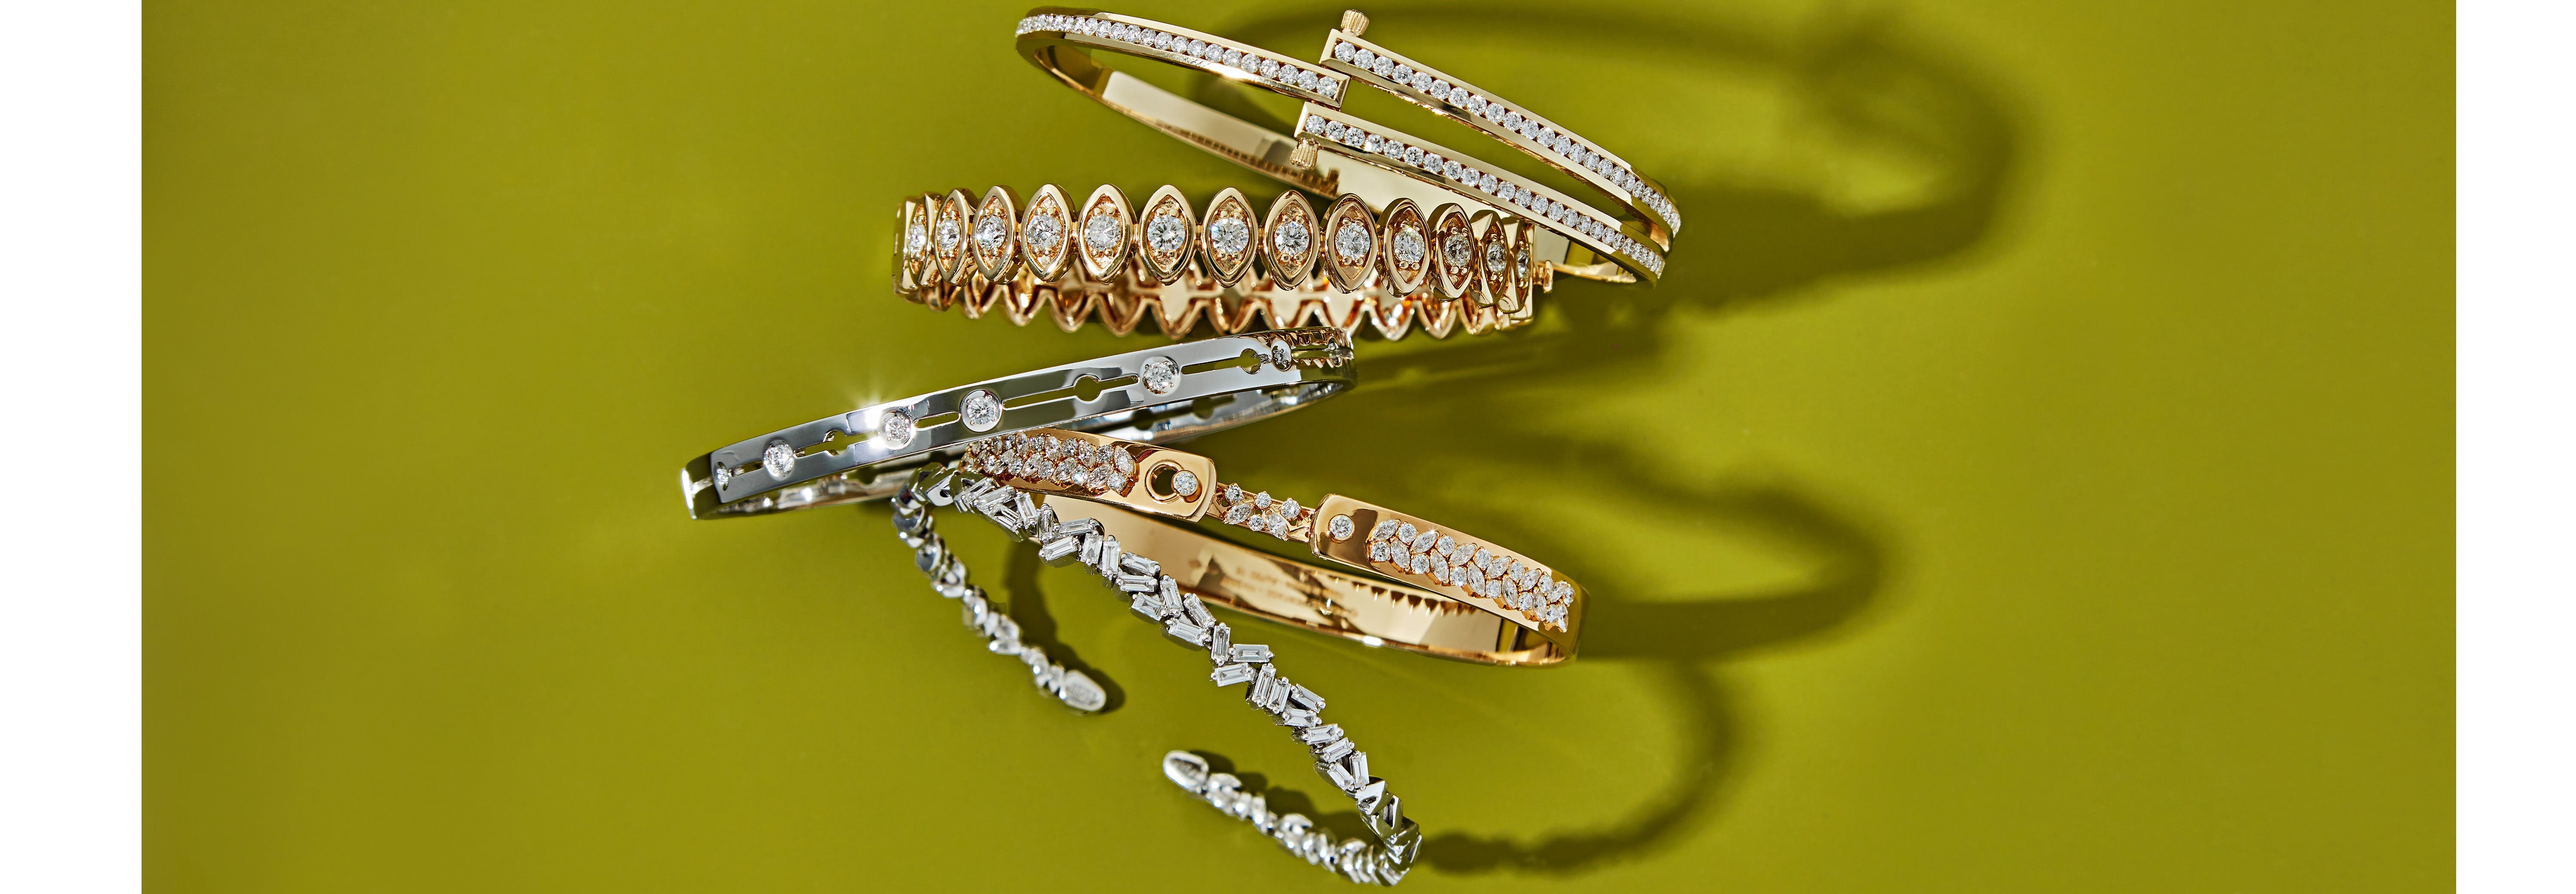 Diamond Open Heart Bracelet for Women, 14k Real Gold Heart Shaped Bracelet, 14k Solid Gold Dainty Bracelets, Women's 14k Gold Jewelry